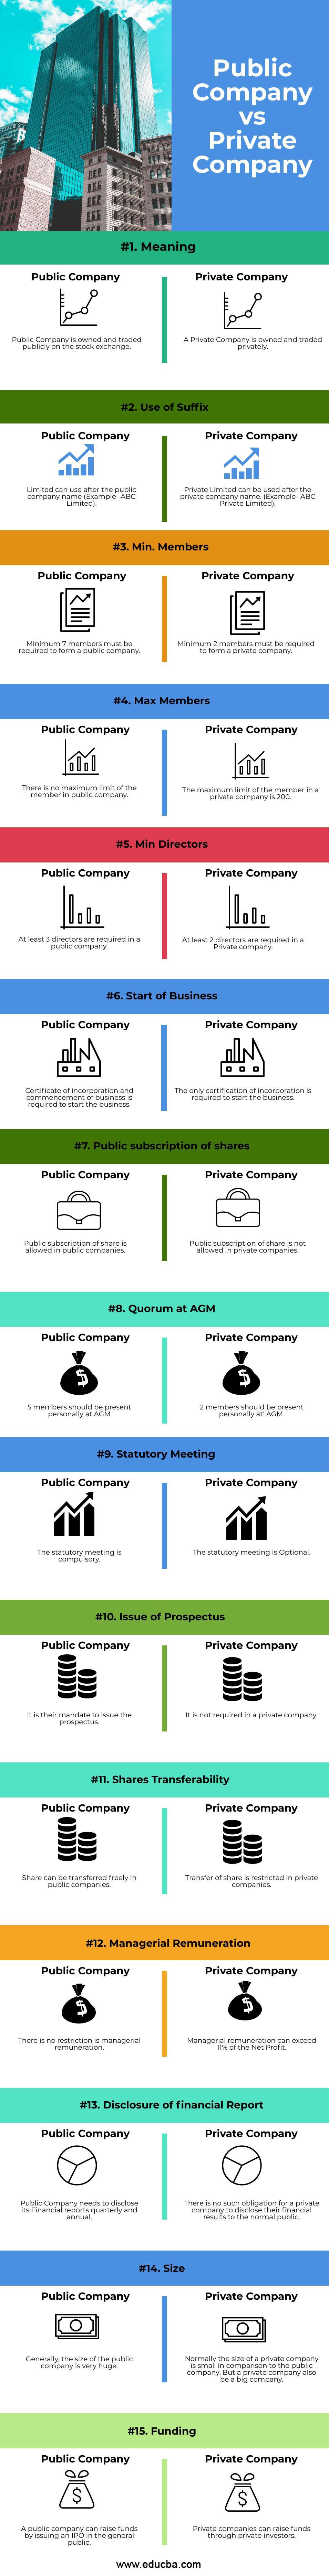 Public-Company-vs-Private-Company-info